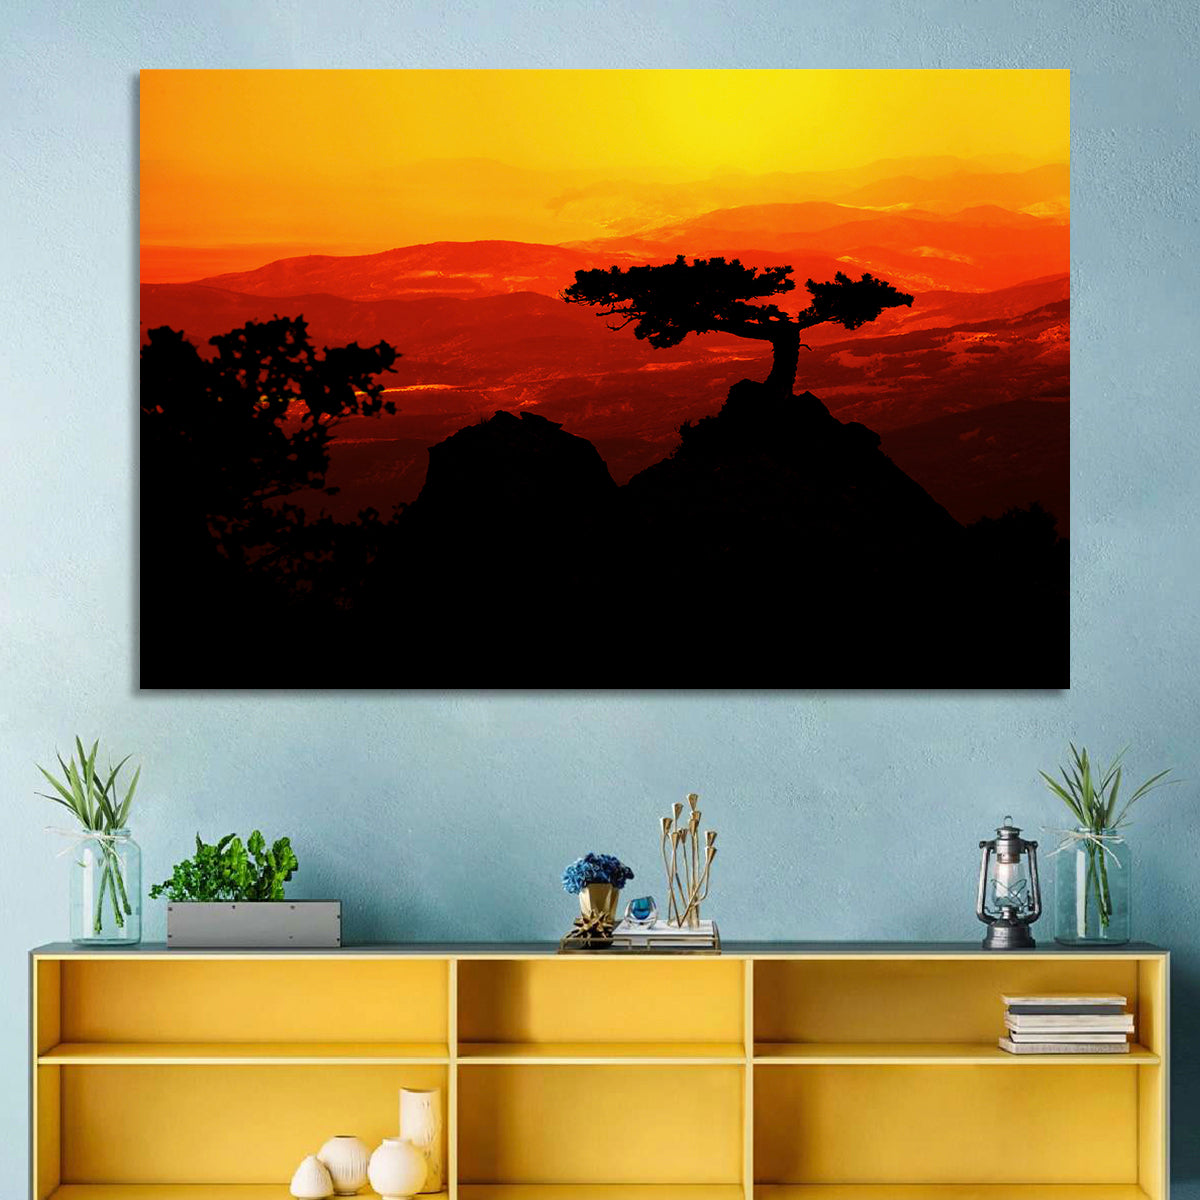 African Sunset Landscape Wall Art